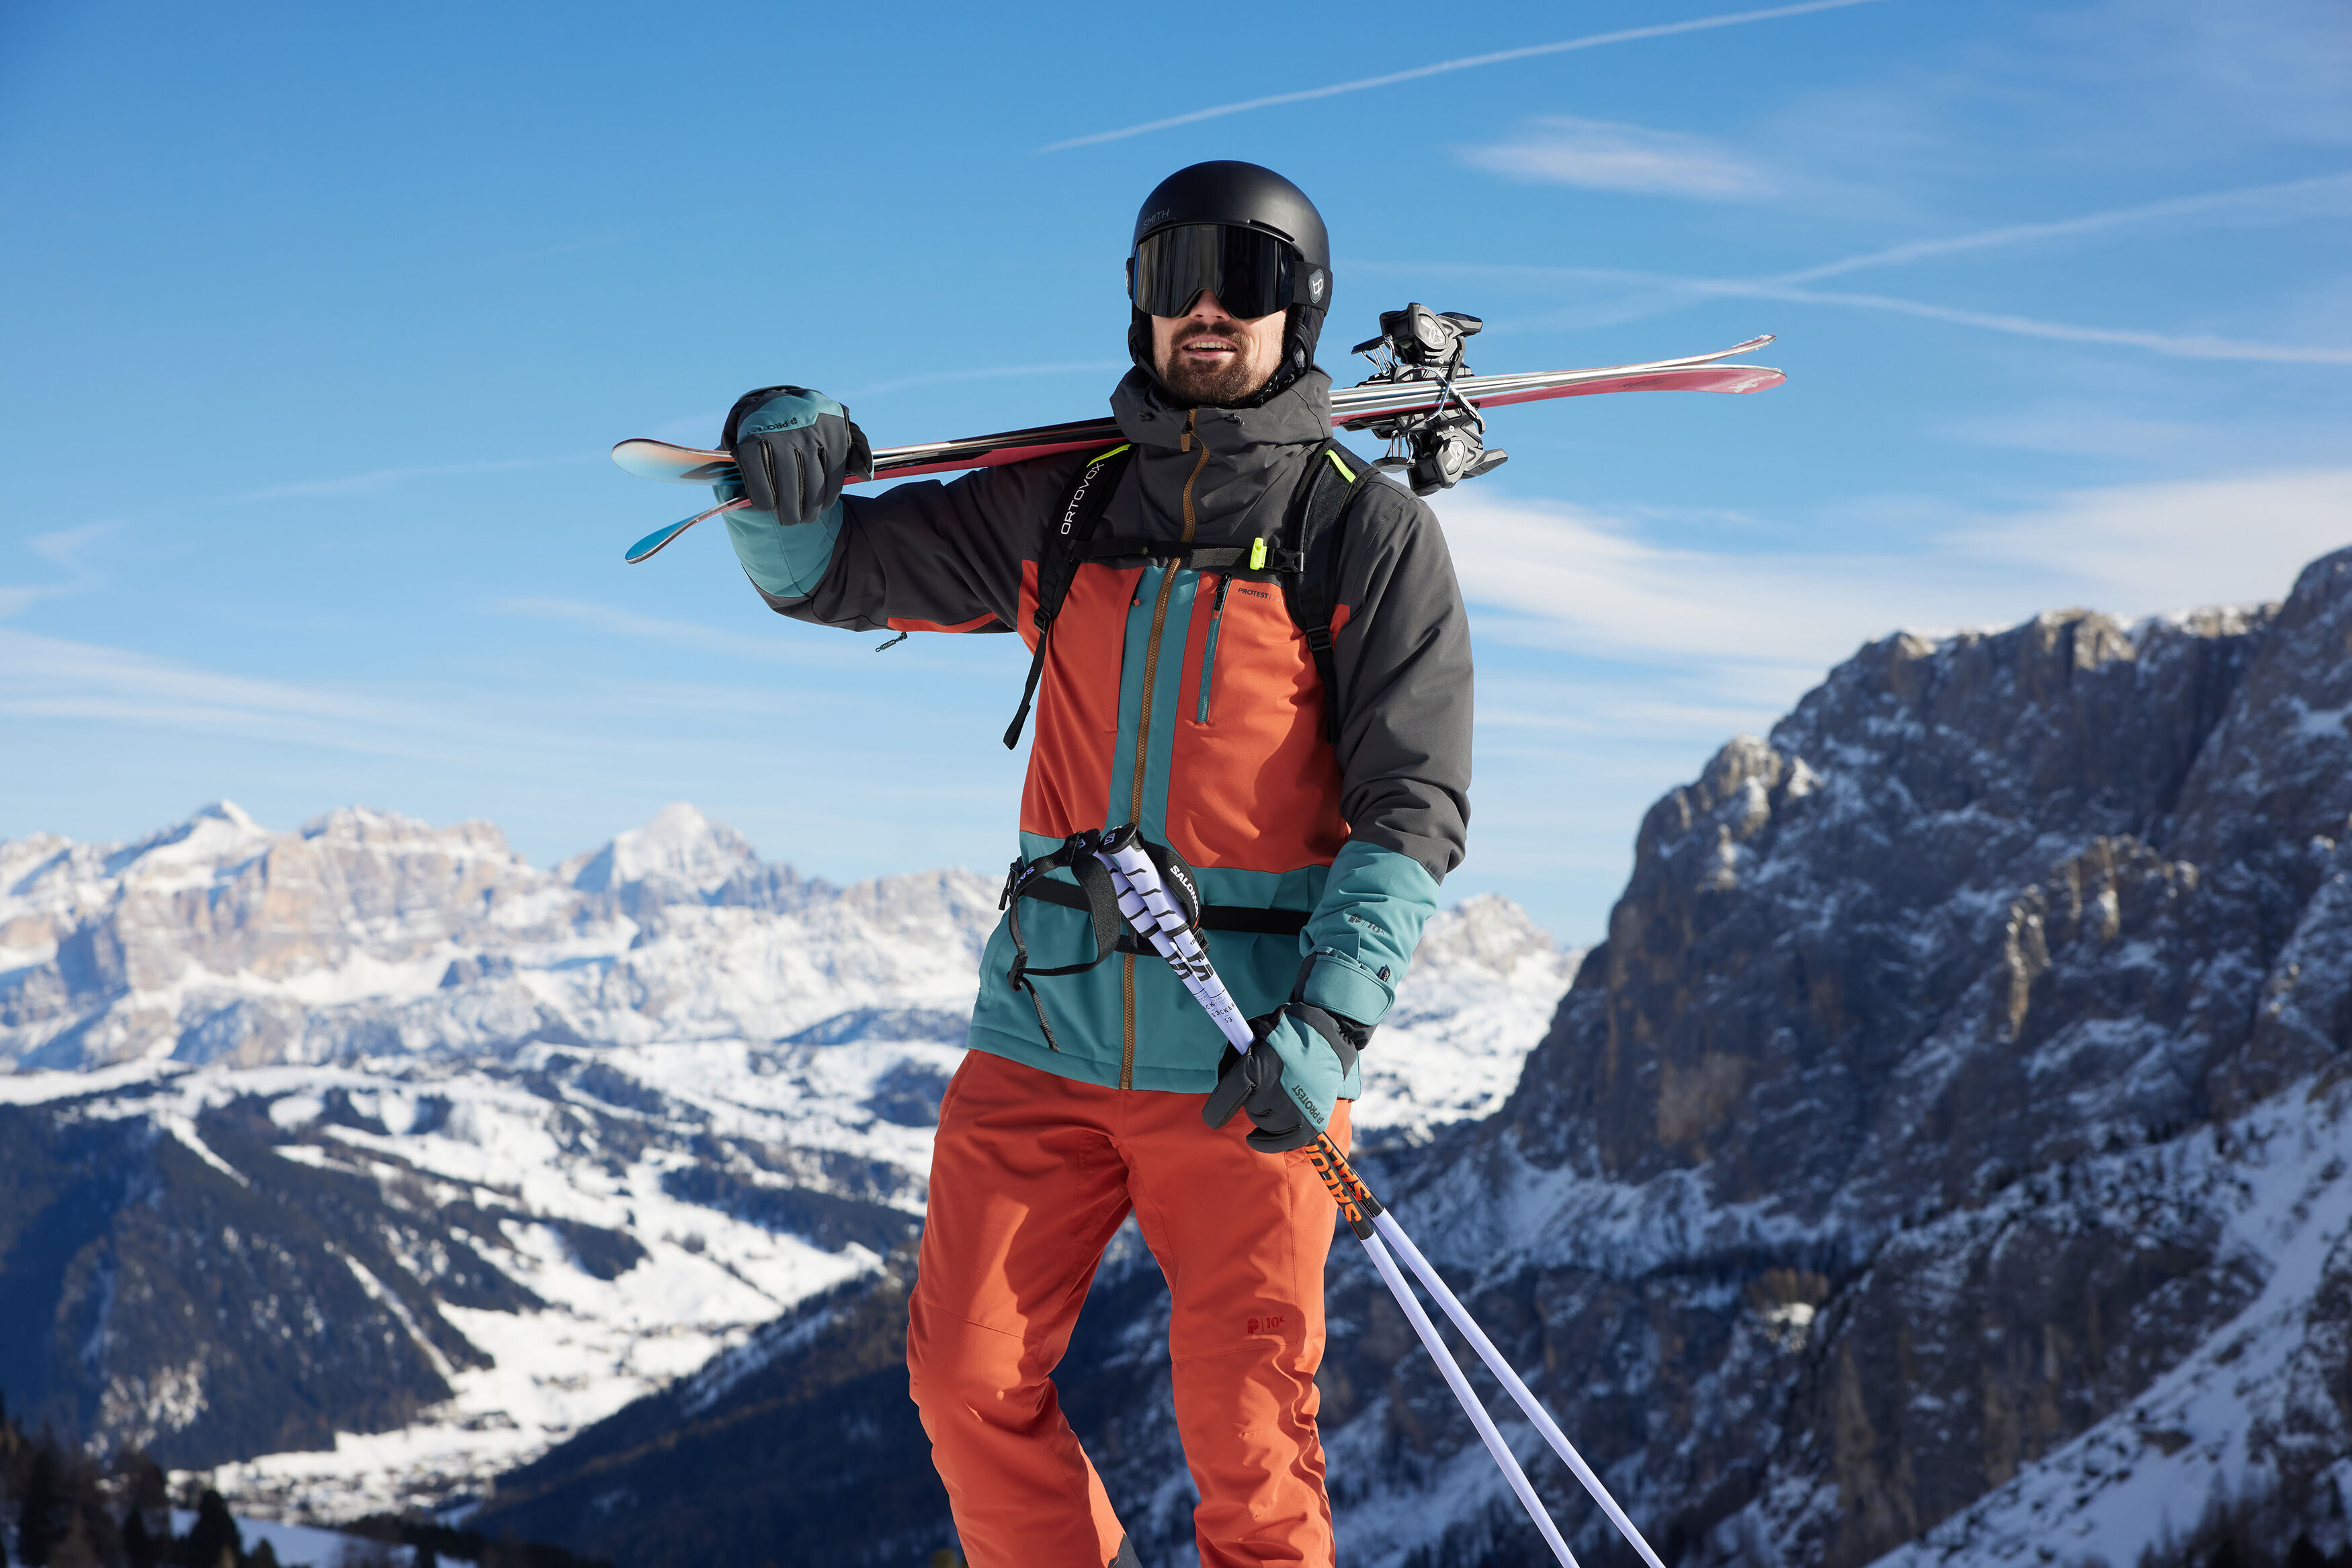 Combinaison de ski dhiver pour hommes, vêtements de snowboard, combinaison  de snowboard, ski global, combinaison de ski hommes, vêtements de sport,  combinaison dhiver, combinaison de neige colorée -  France